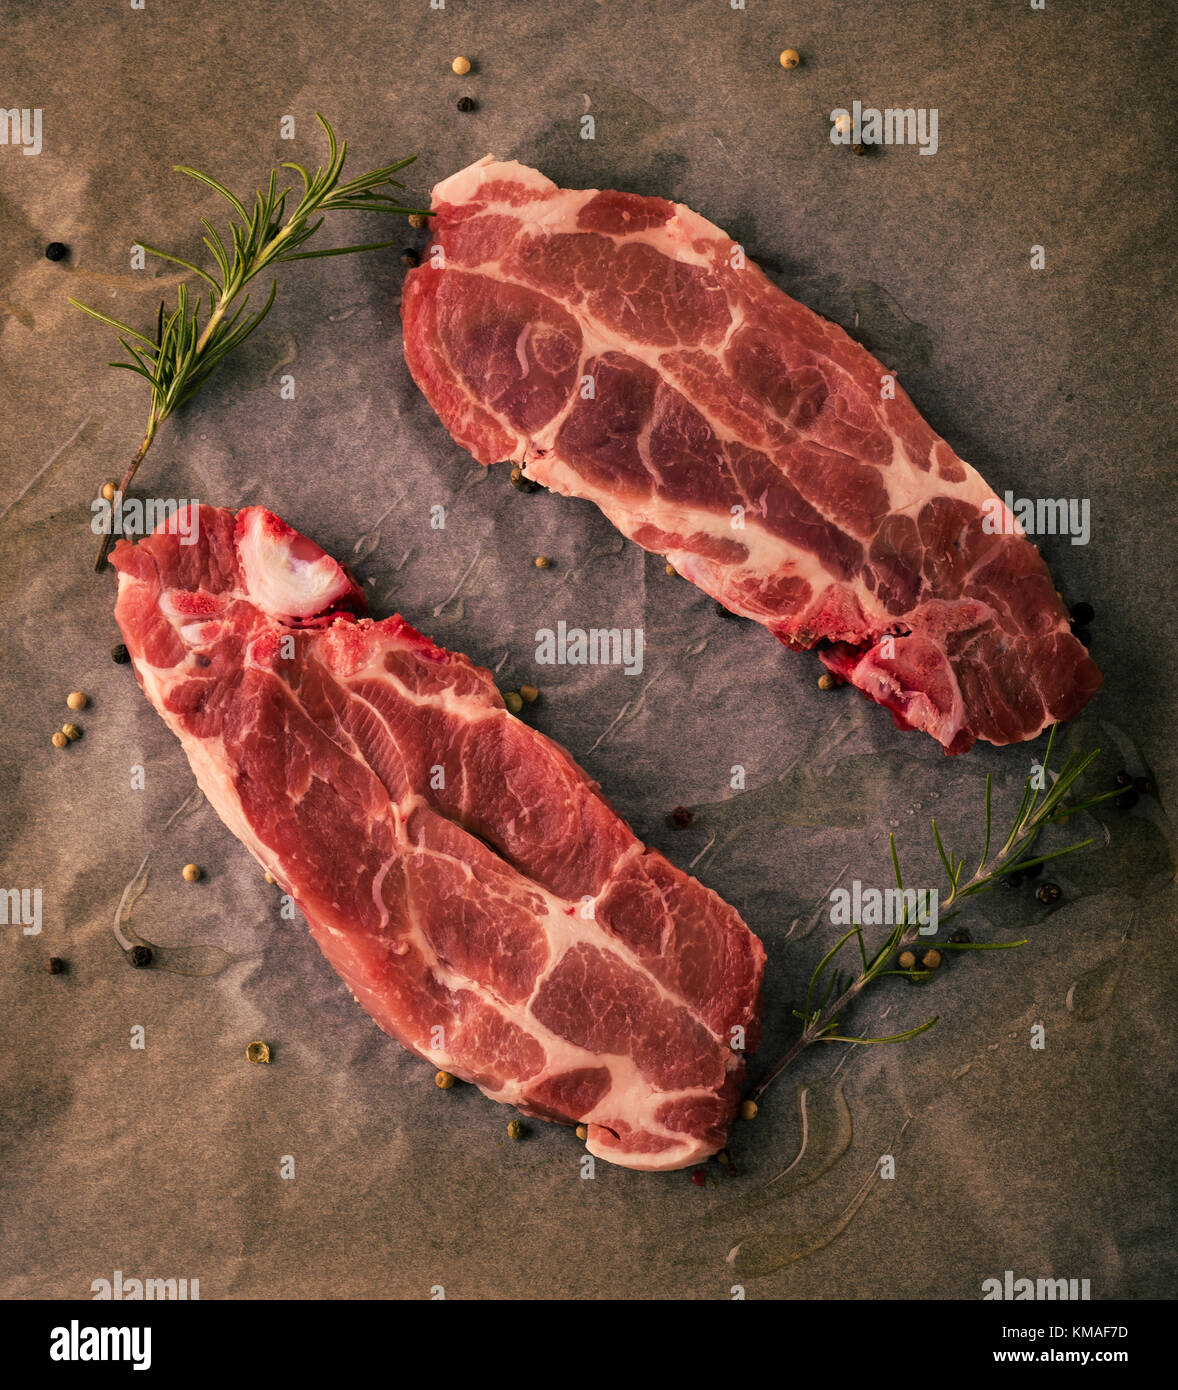 Photo verticale de deux tranches de steaks de cou de porc. Les portions de viande par la couleur rouge et la graisse est placée sur la plaque à pâtisserie de papier usé avec poivre, rosema Banque D'Images